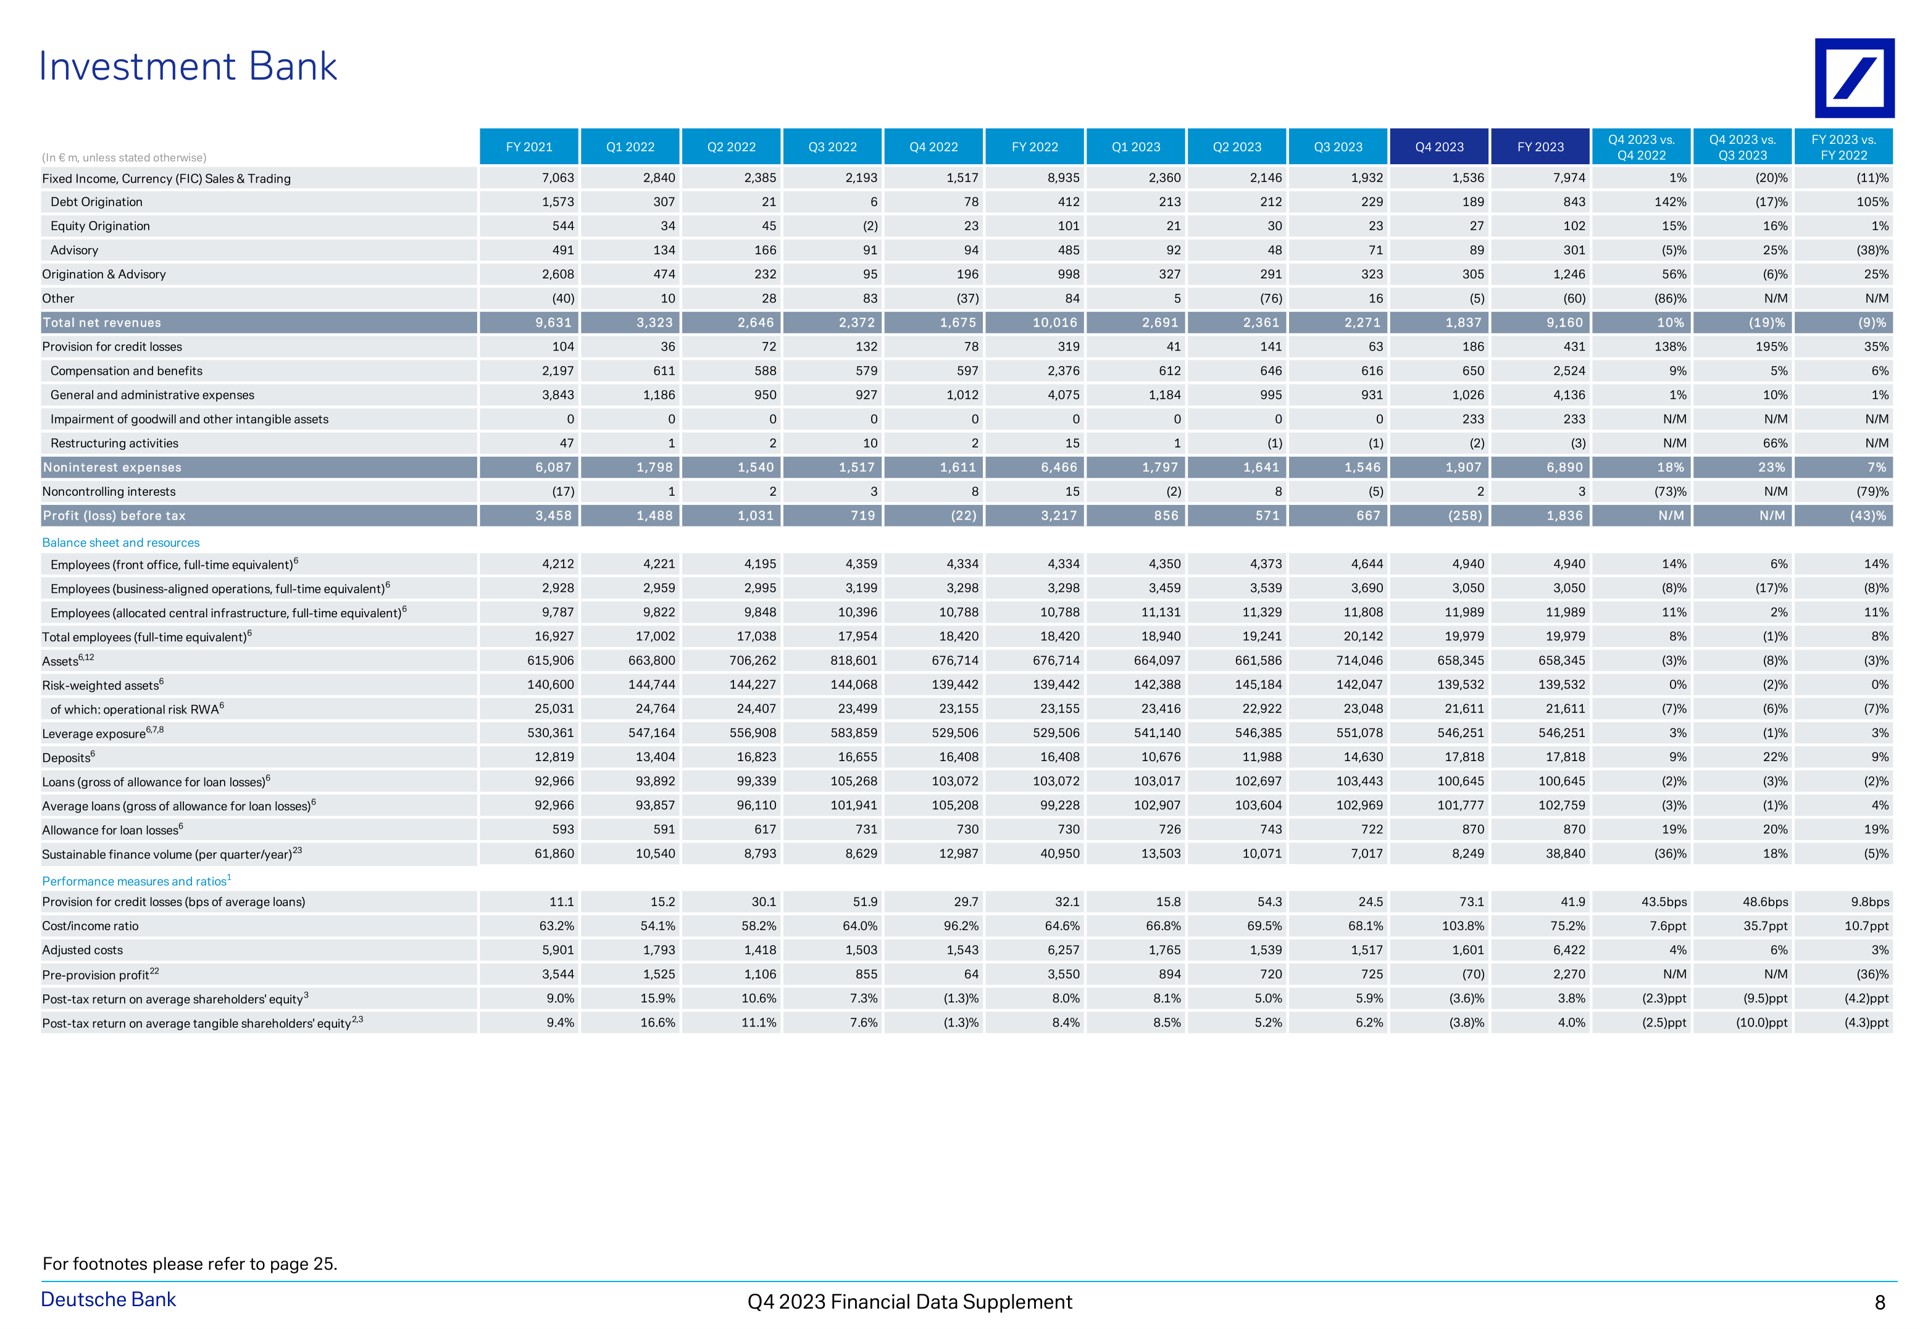 investment bank a financial data supplement | Deutsche Bank